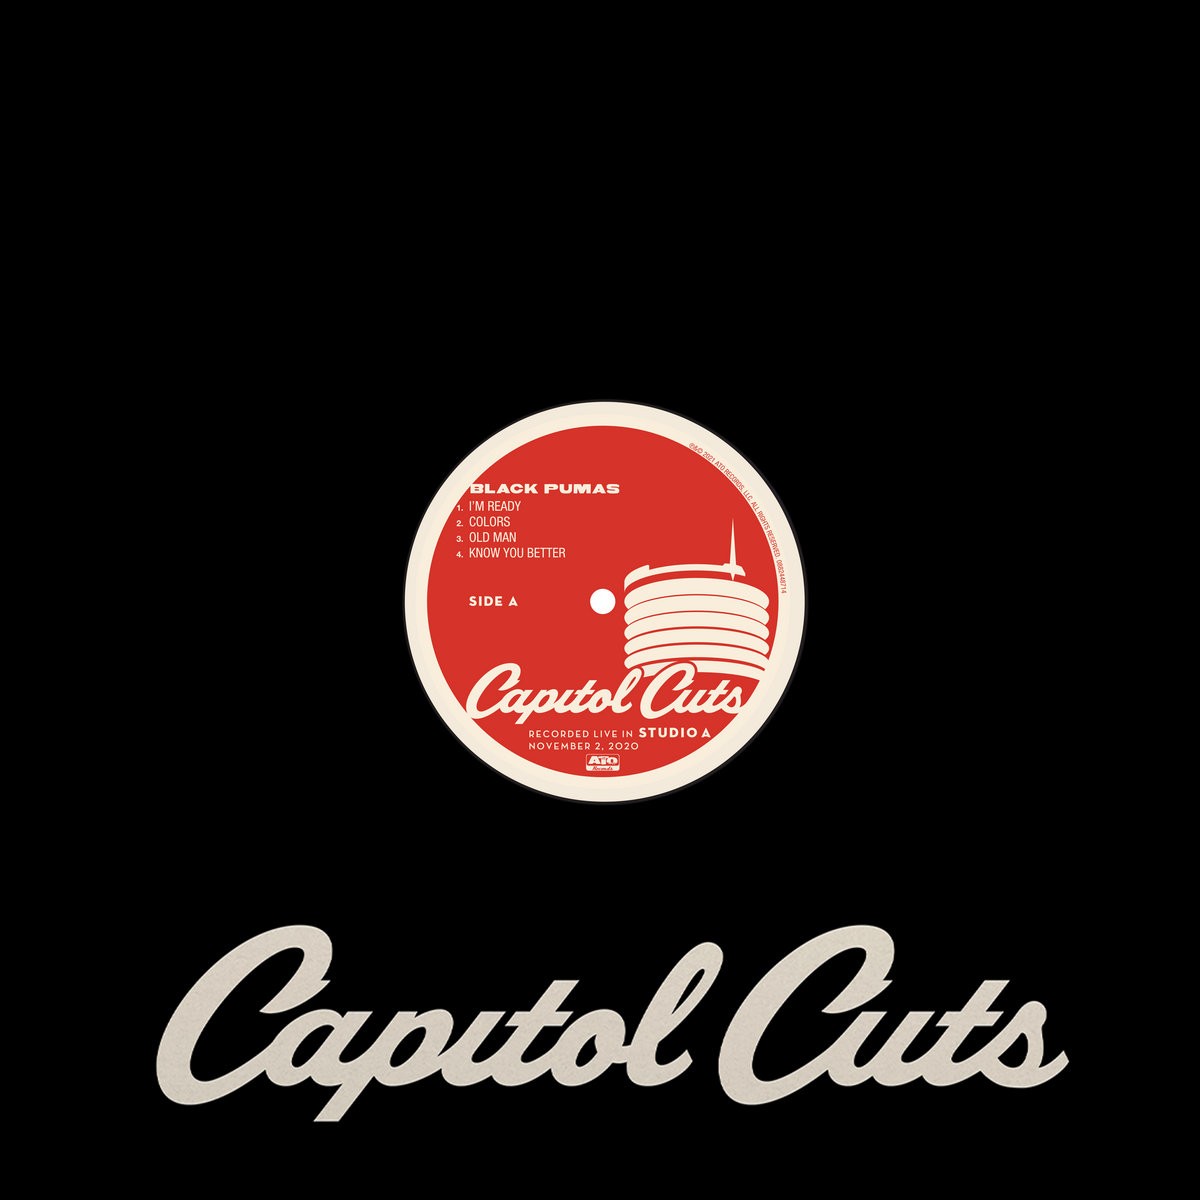 Black Pumas - Capitol Cuts - Live In Studio A